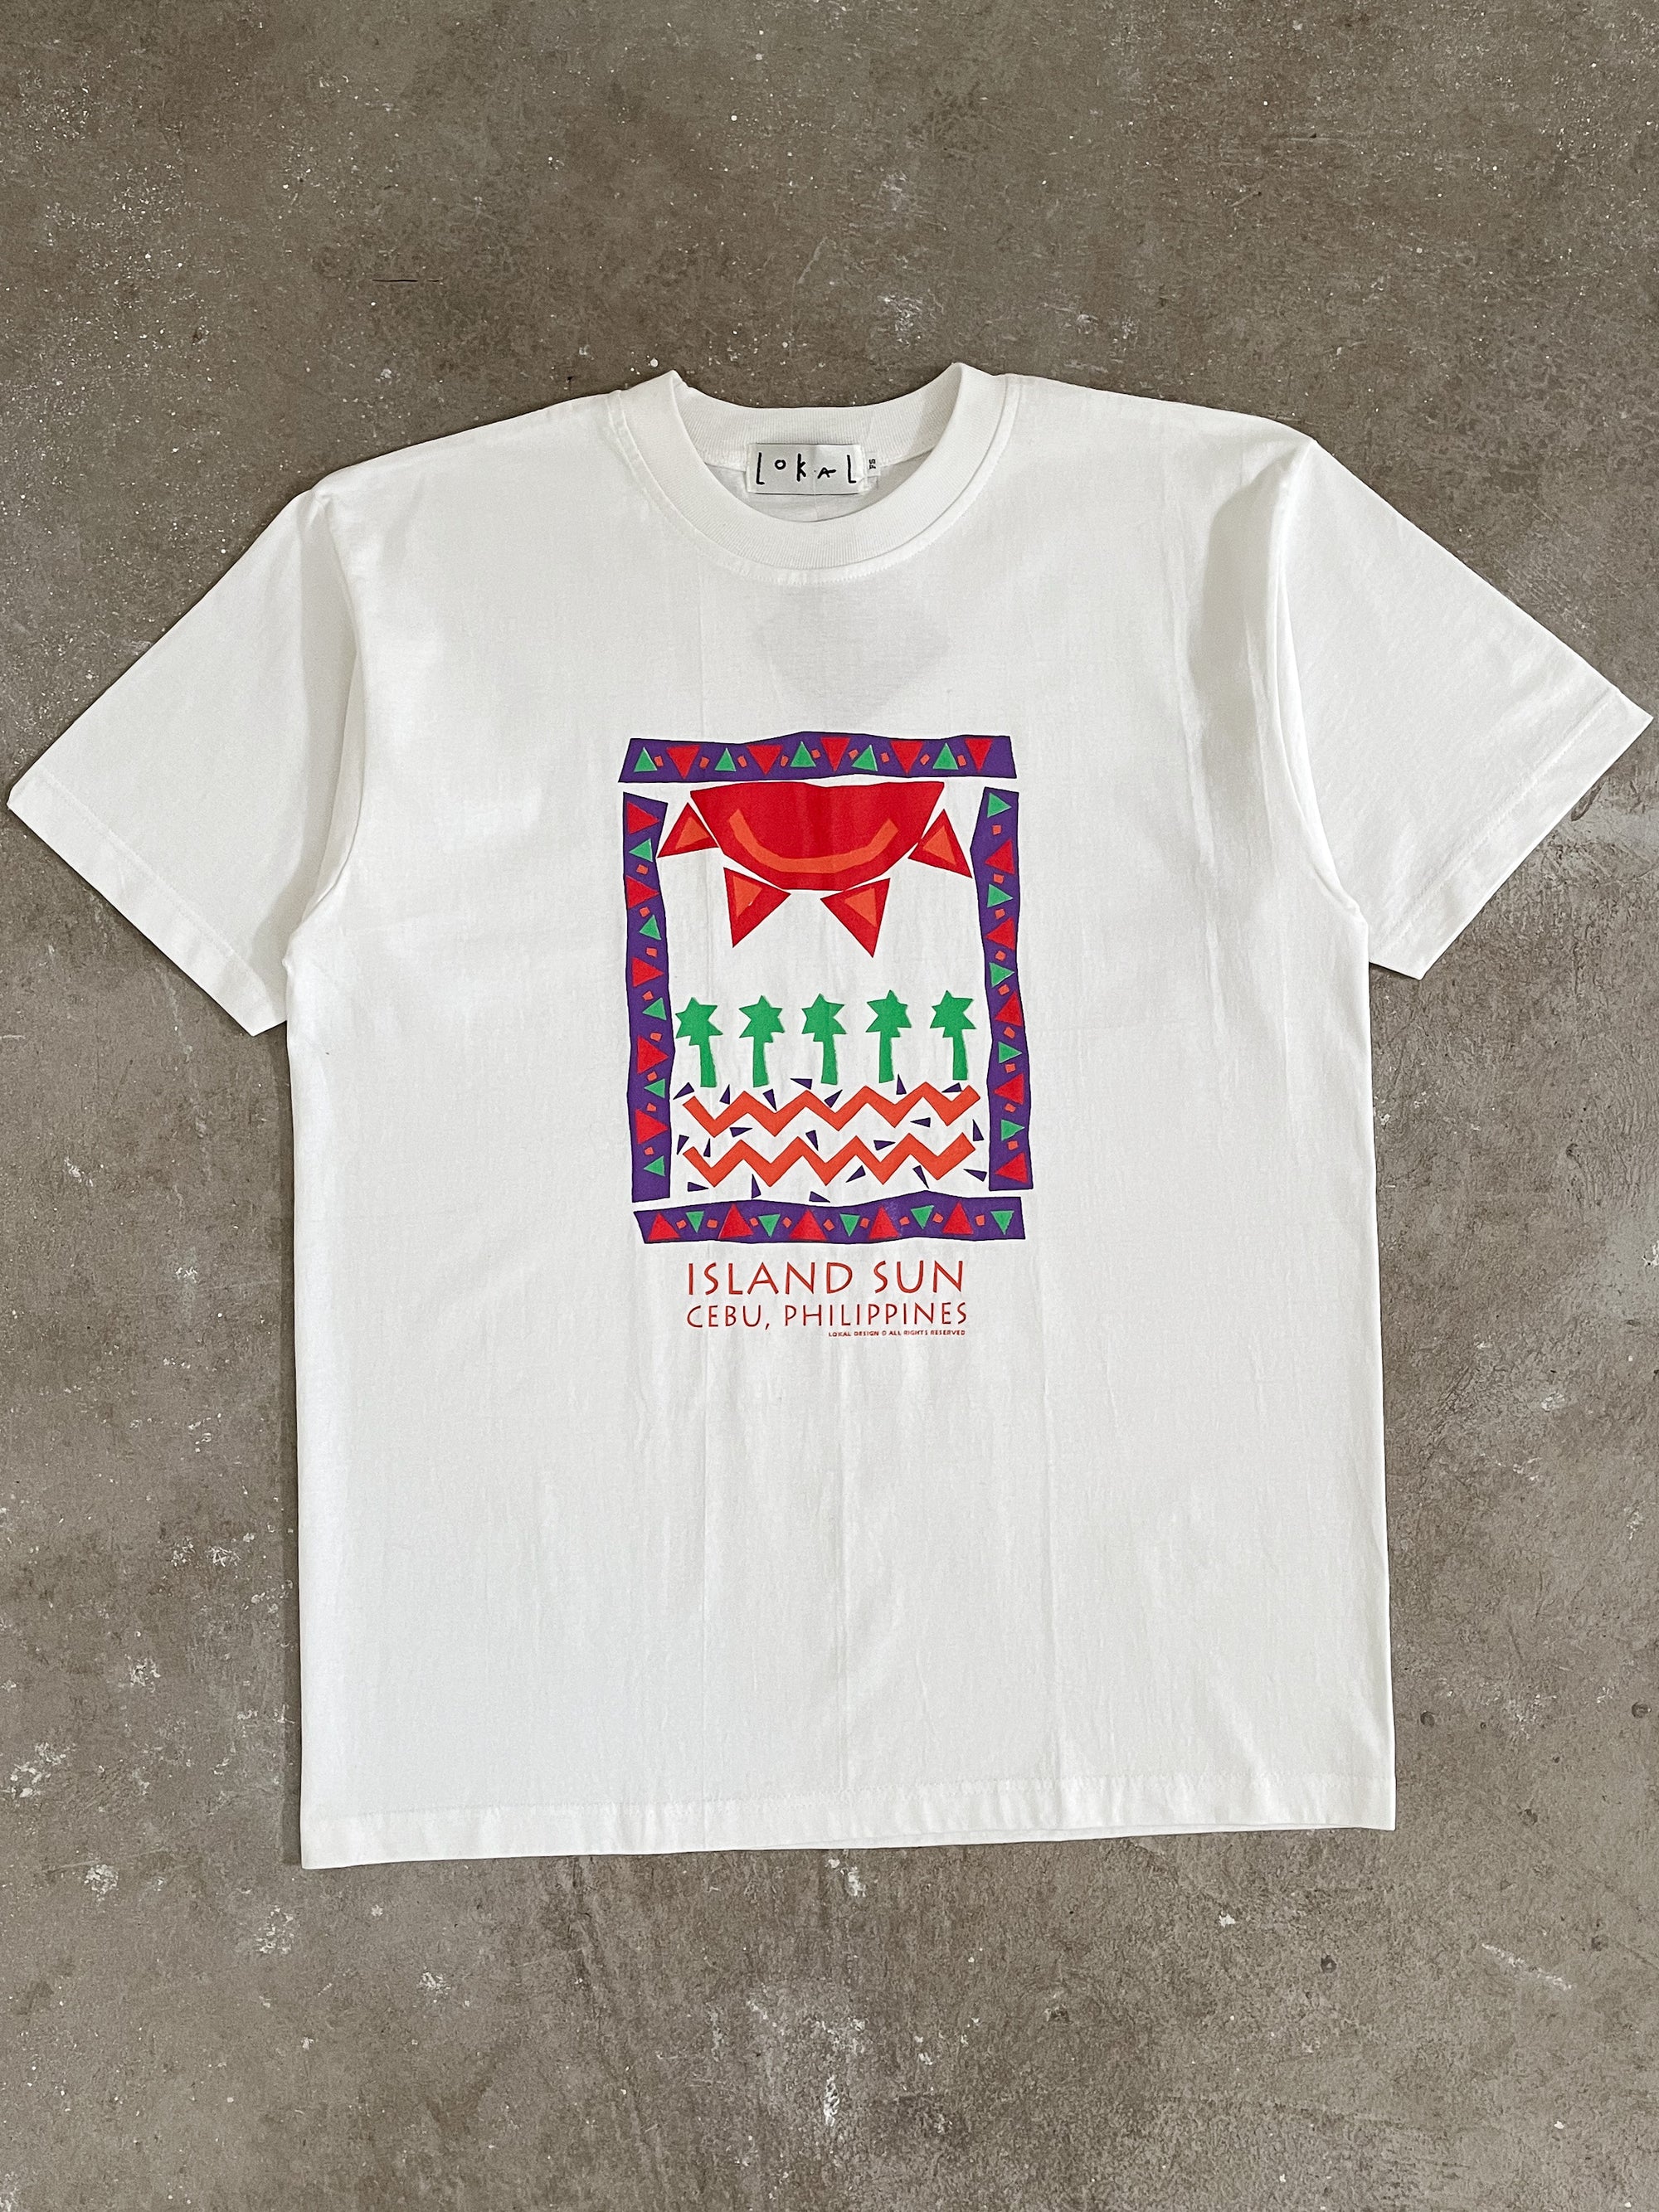 1990s “Island Sun” Tee (XL)